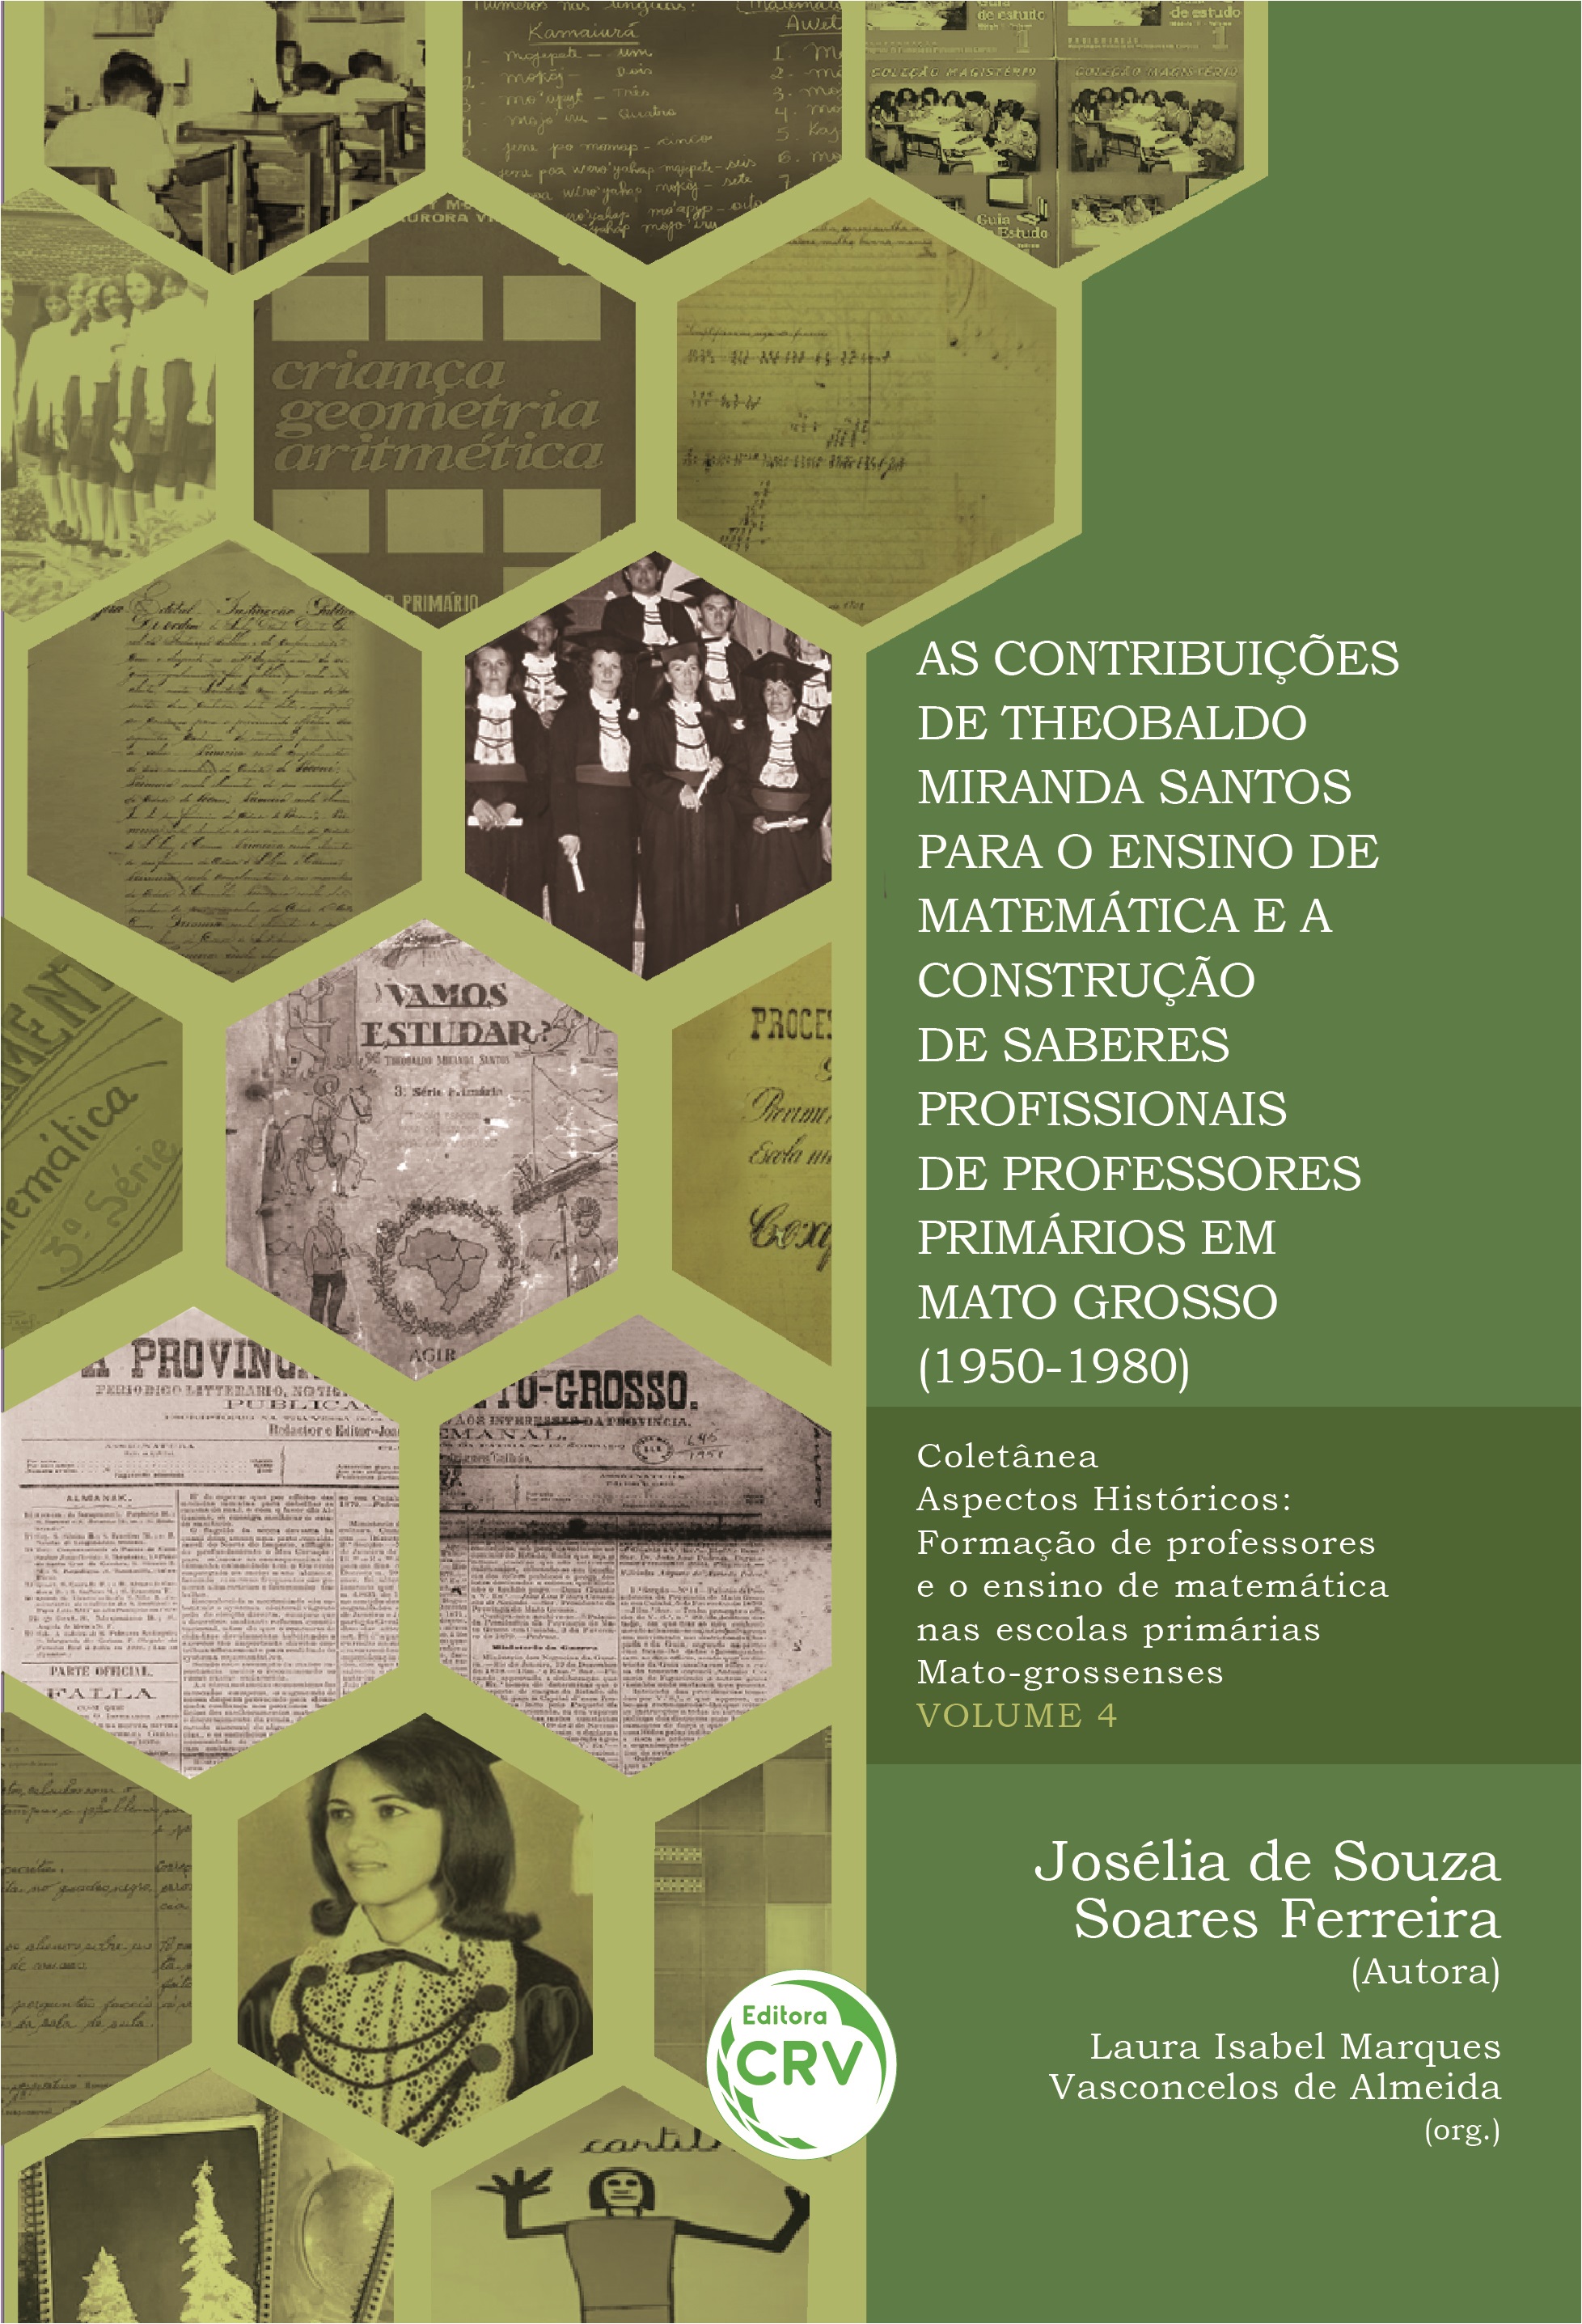 Capa do livro: AS CONTRIBUIÇÕES DE THEOBALDO MIRANDA SANTOS PARA O ENSINO DE MATEMÁTICA E A CONSTRUÇÃO DE SABERES PROFISSIONAIS DE PROFESSORES PRIMÁRIOS EM MATO GROSSO (1950-1980)<br> <br>COLEÇÃO ASPECTOS HISTÓRICOS - VOLUME 4